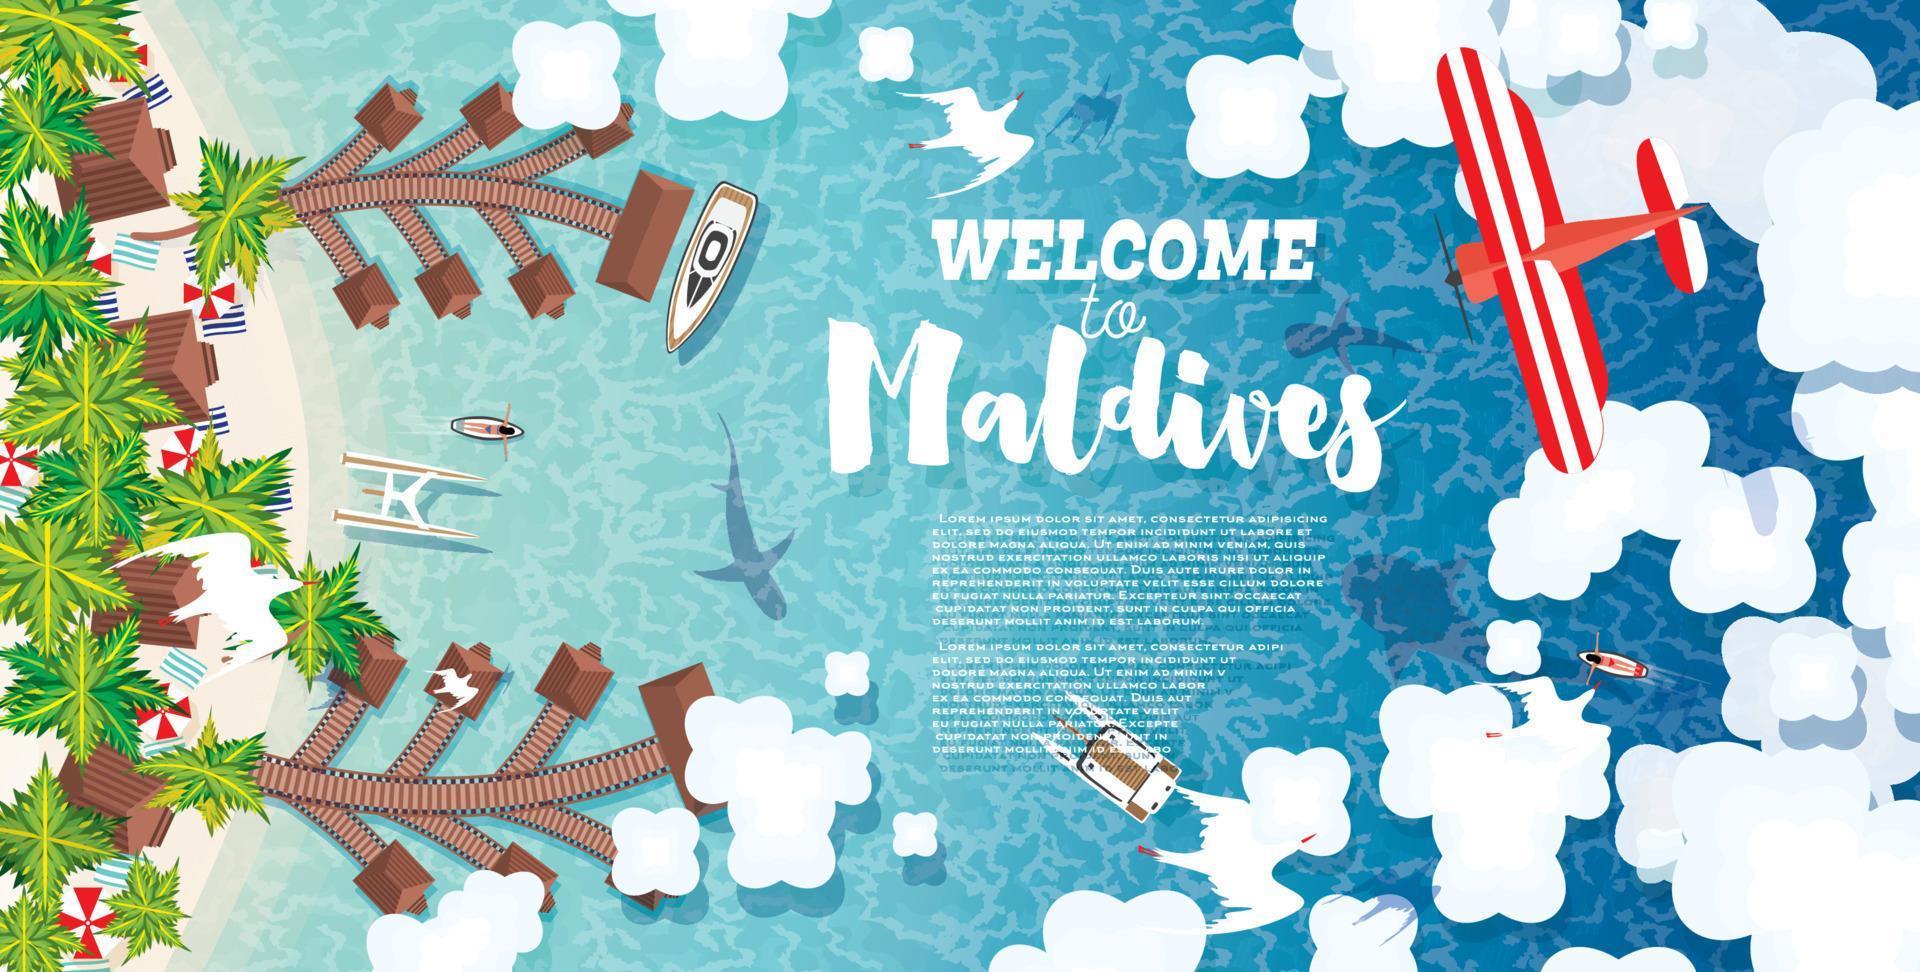 playa de maldivas en la isla. fondo de verano con playa tropical, palmeras, hotel, nubes y avión. vector